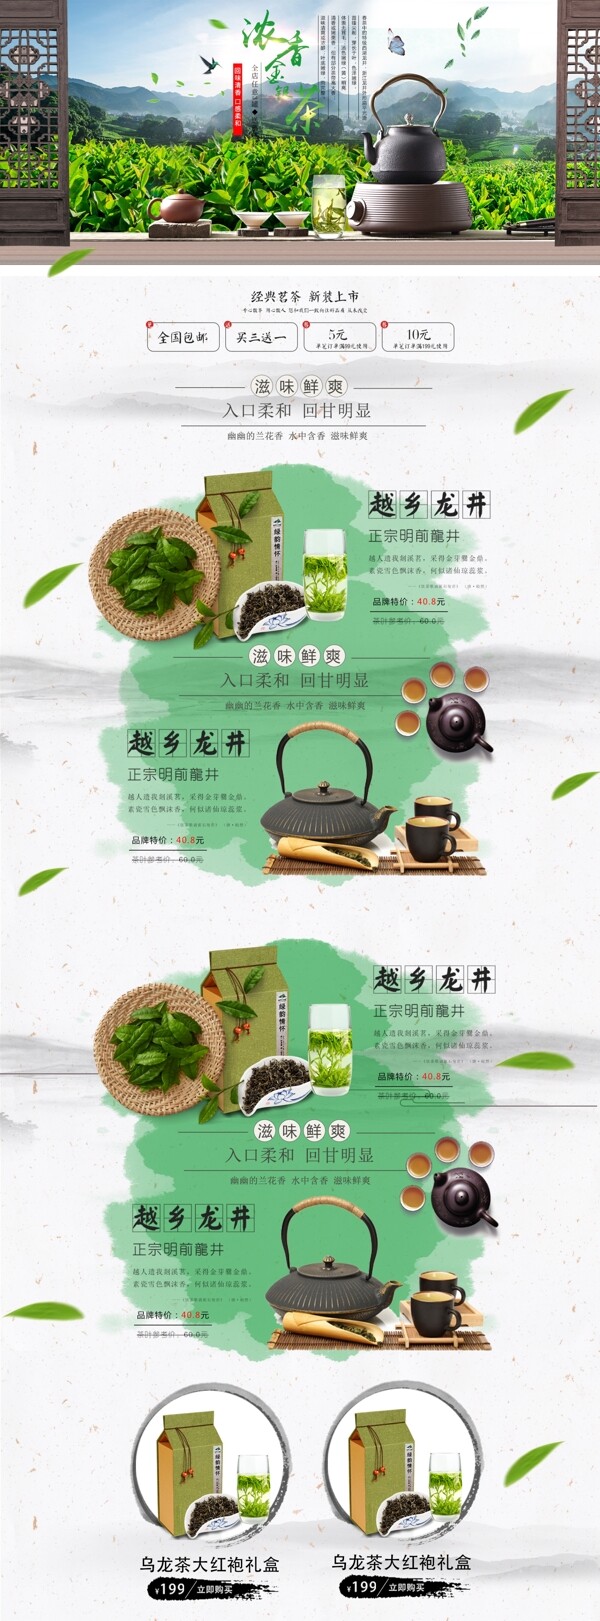 天猫春茶节淘宝首页模板